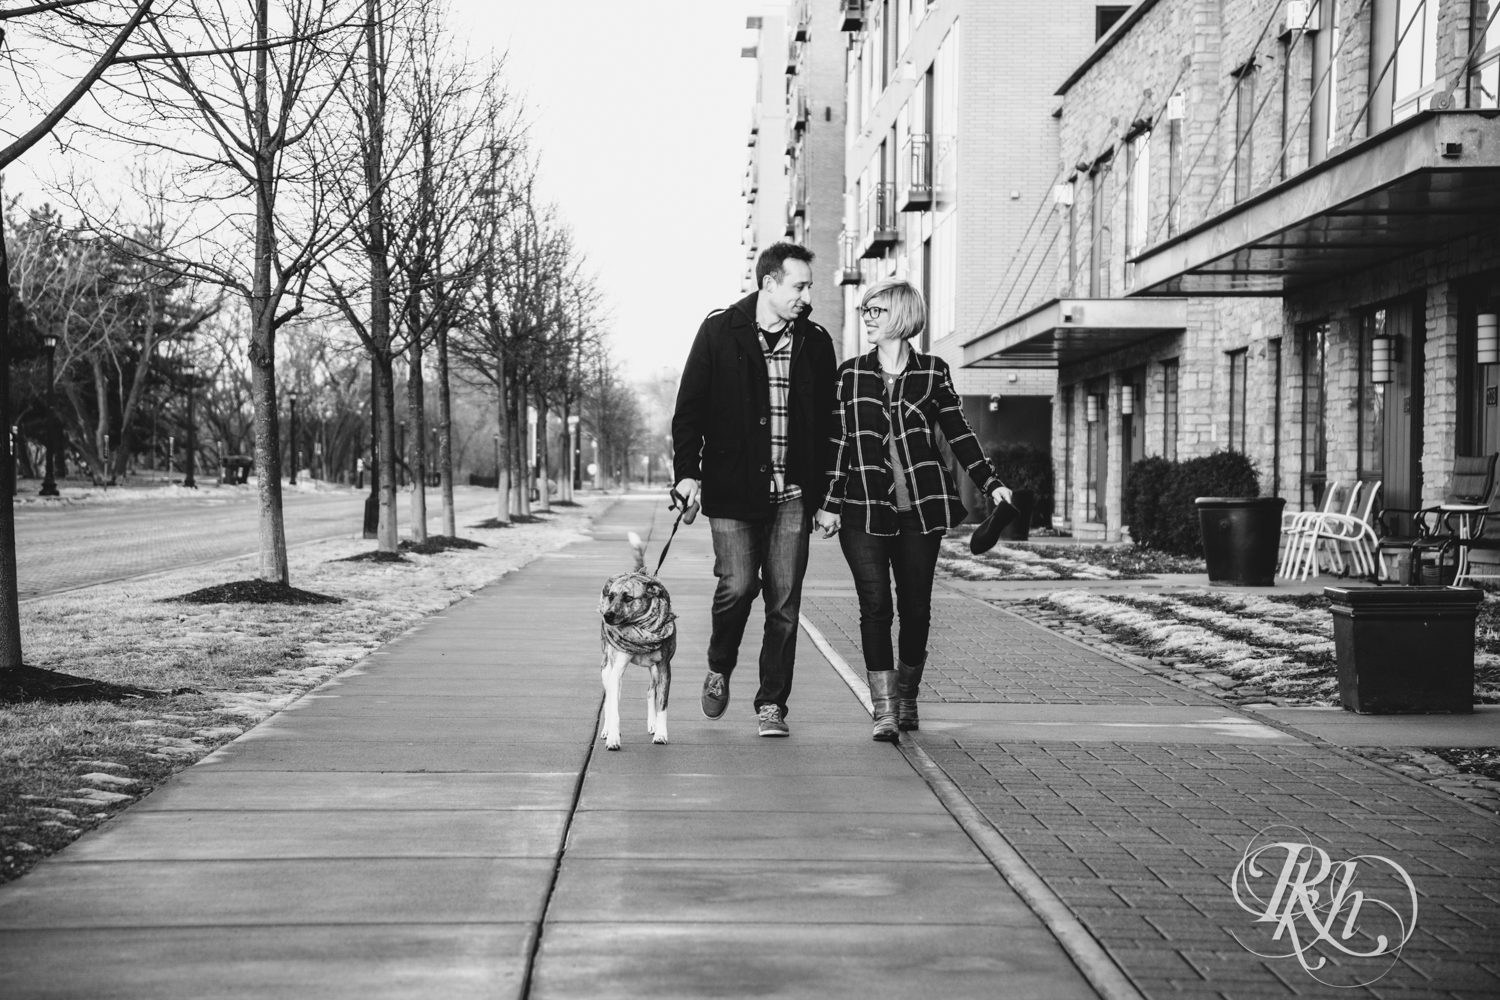 couple walking dog